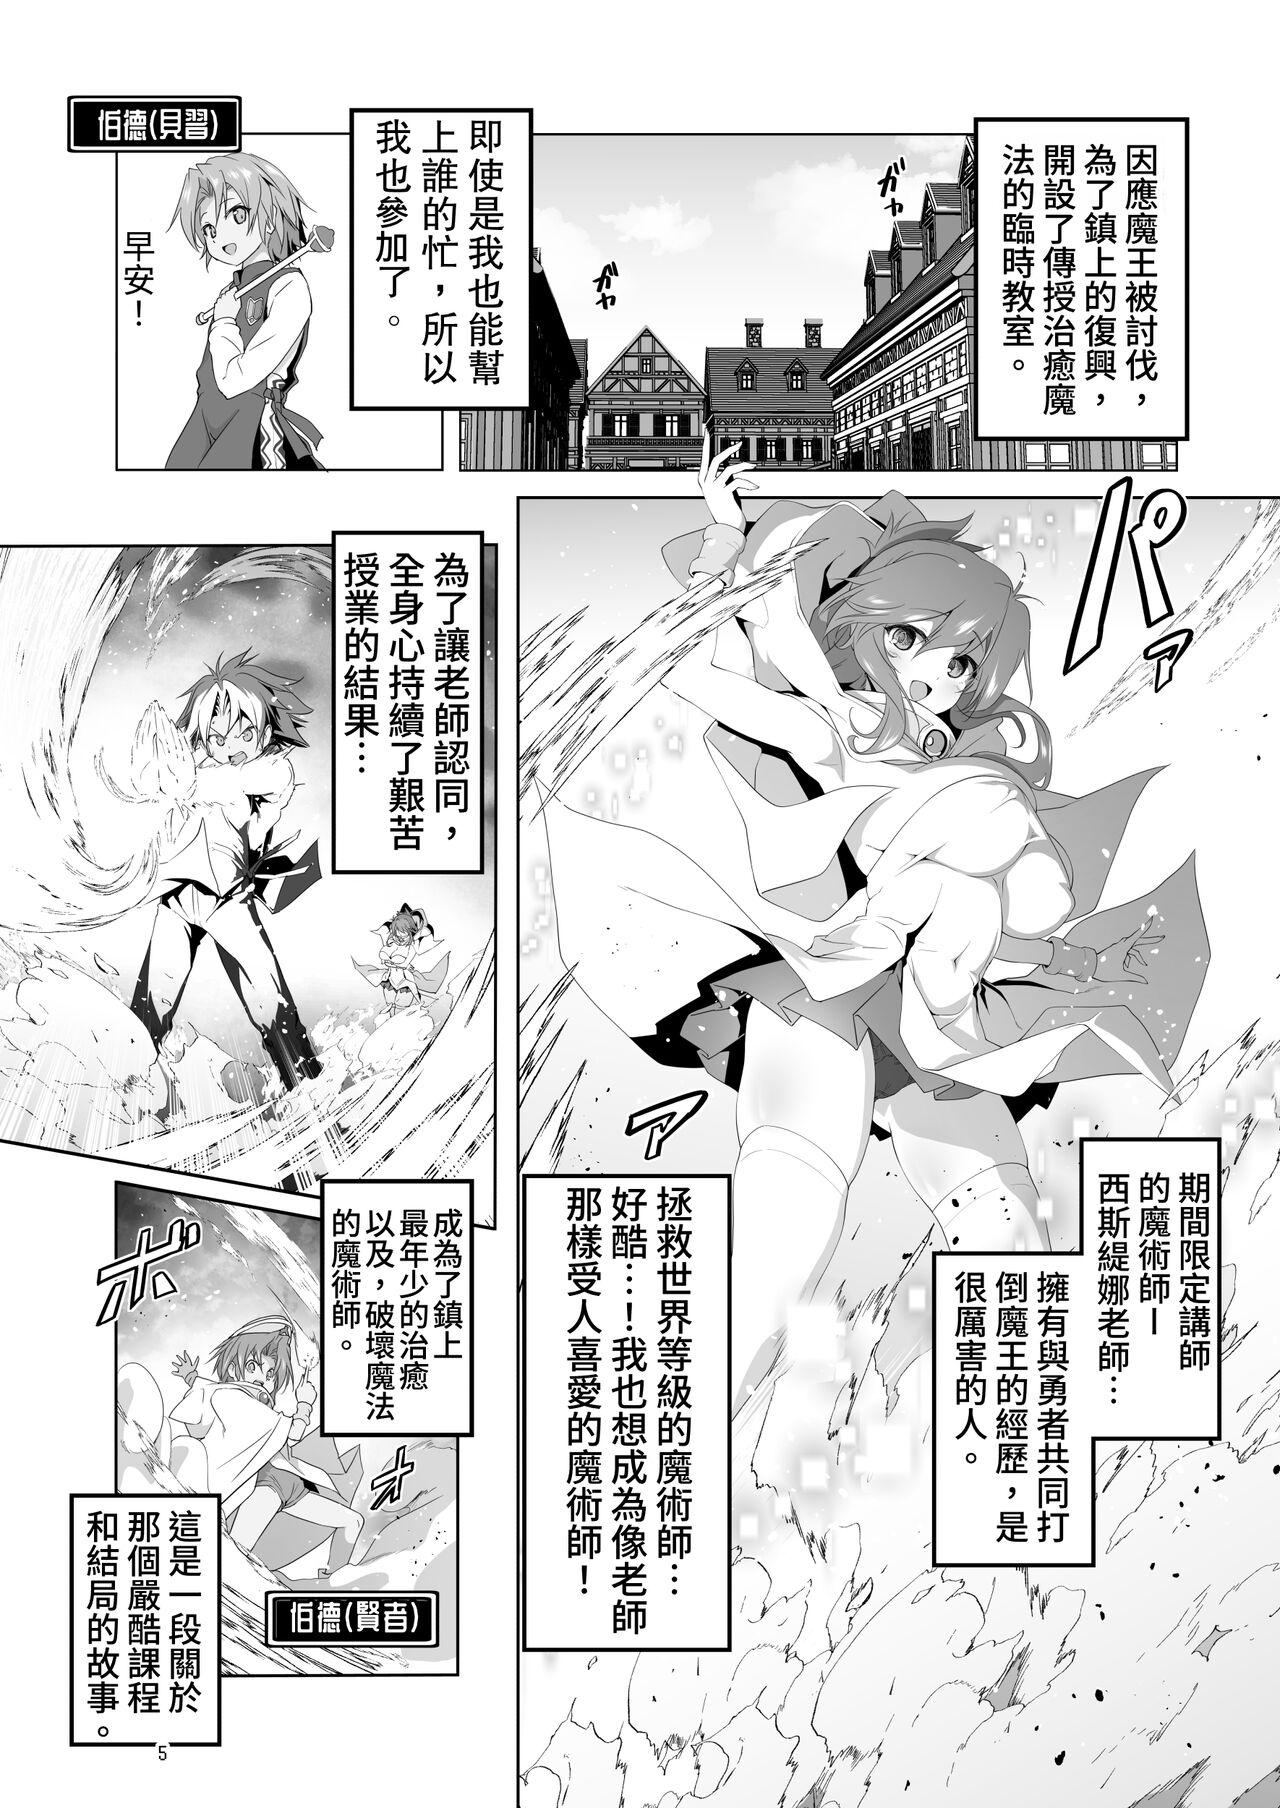 Sharing Makotoni Zannen desu ga Bouken no Sho 9 wa Kiete Shimaimashita. - Original Stretch - Page 5